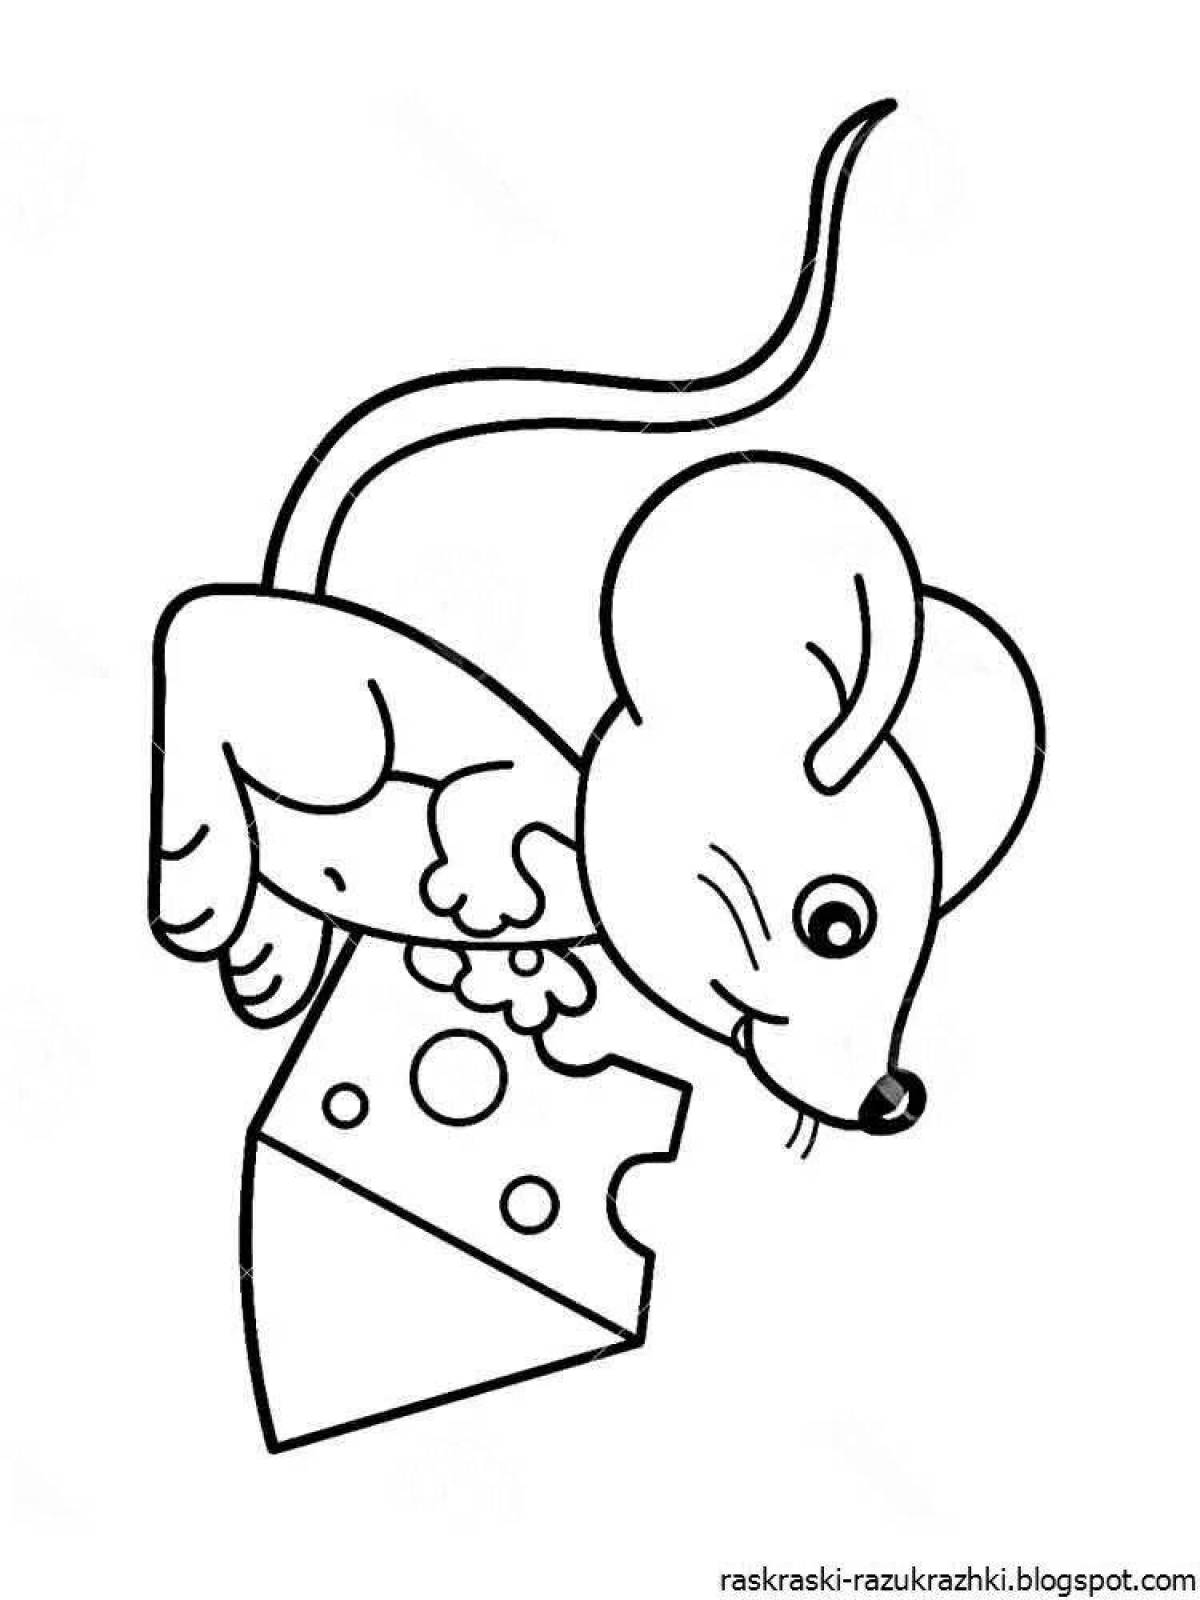 Раскраска мышонок для детей